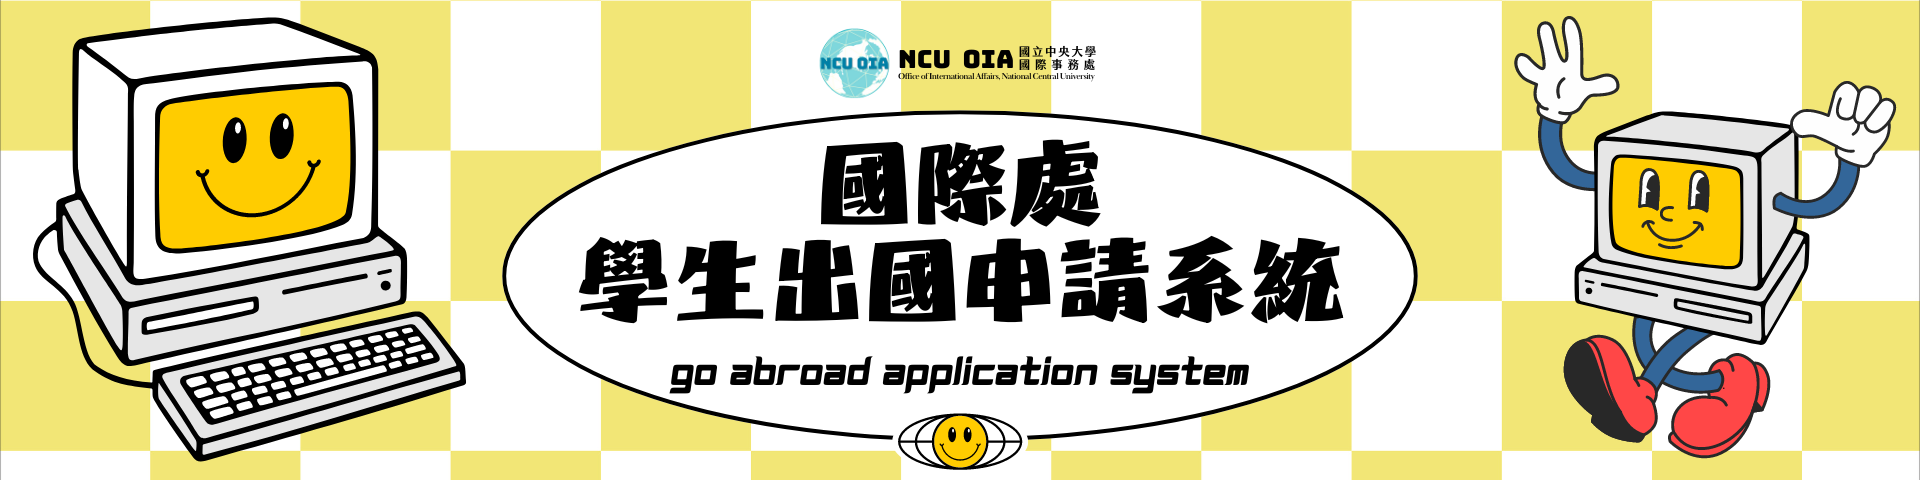 國際處學生出國申請系統